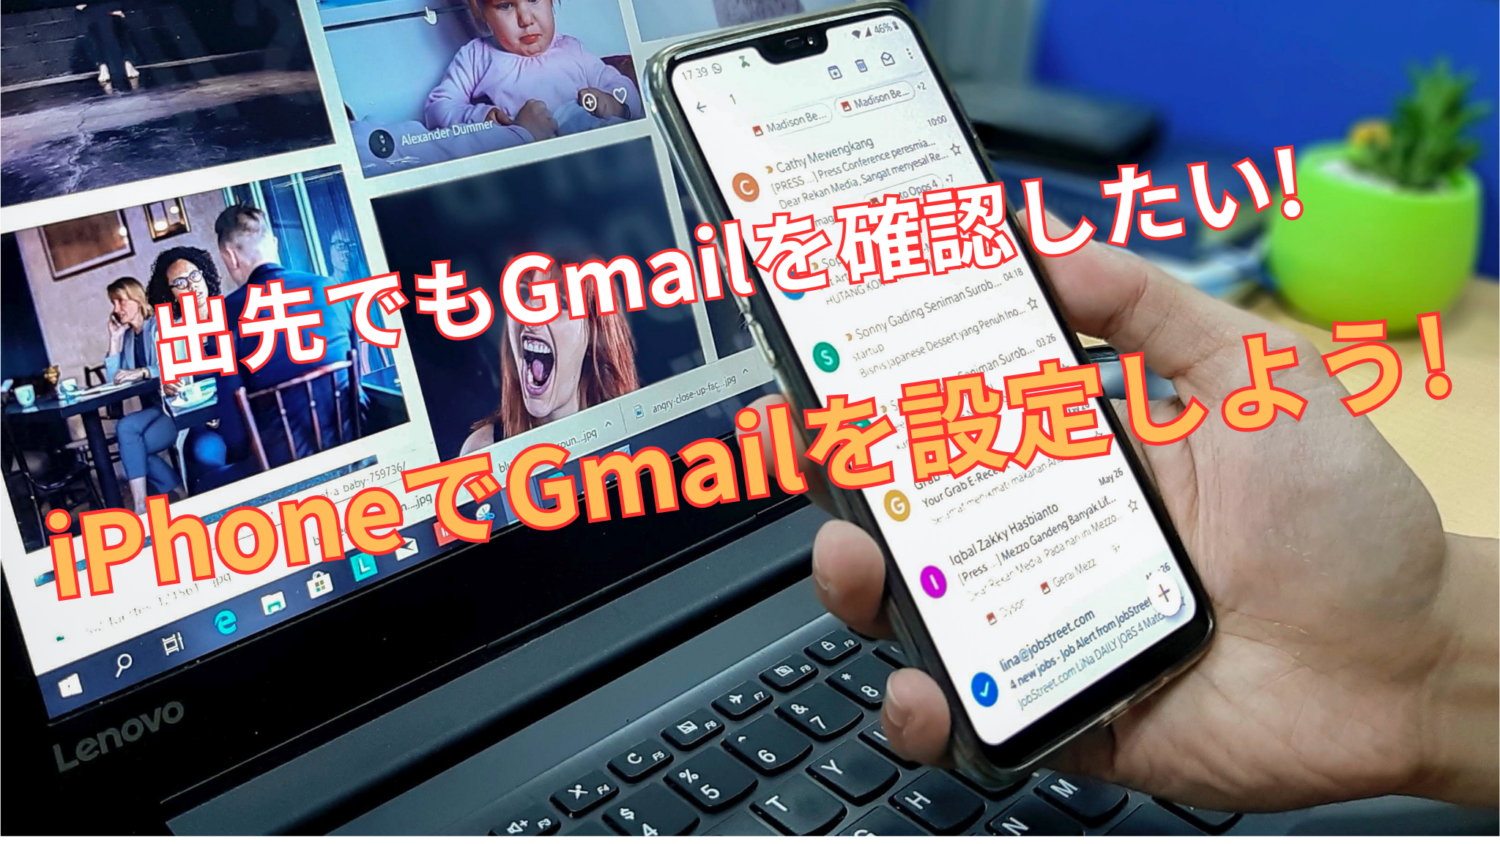 出先でもGmailを確認したい!iPhoneでGmailを設定しよう!